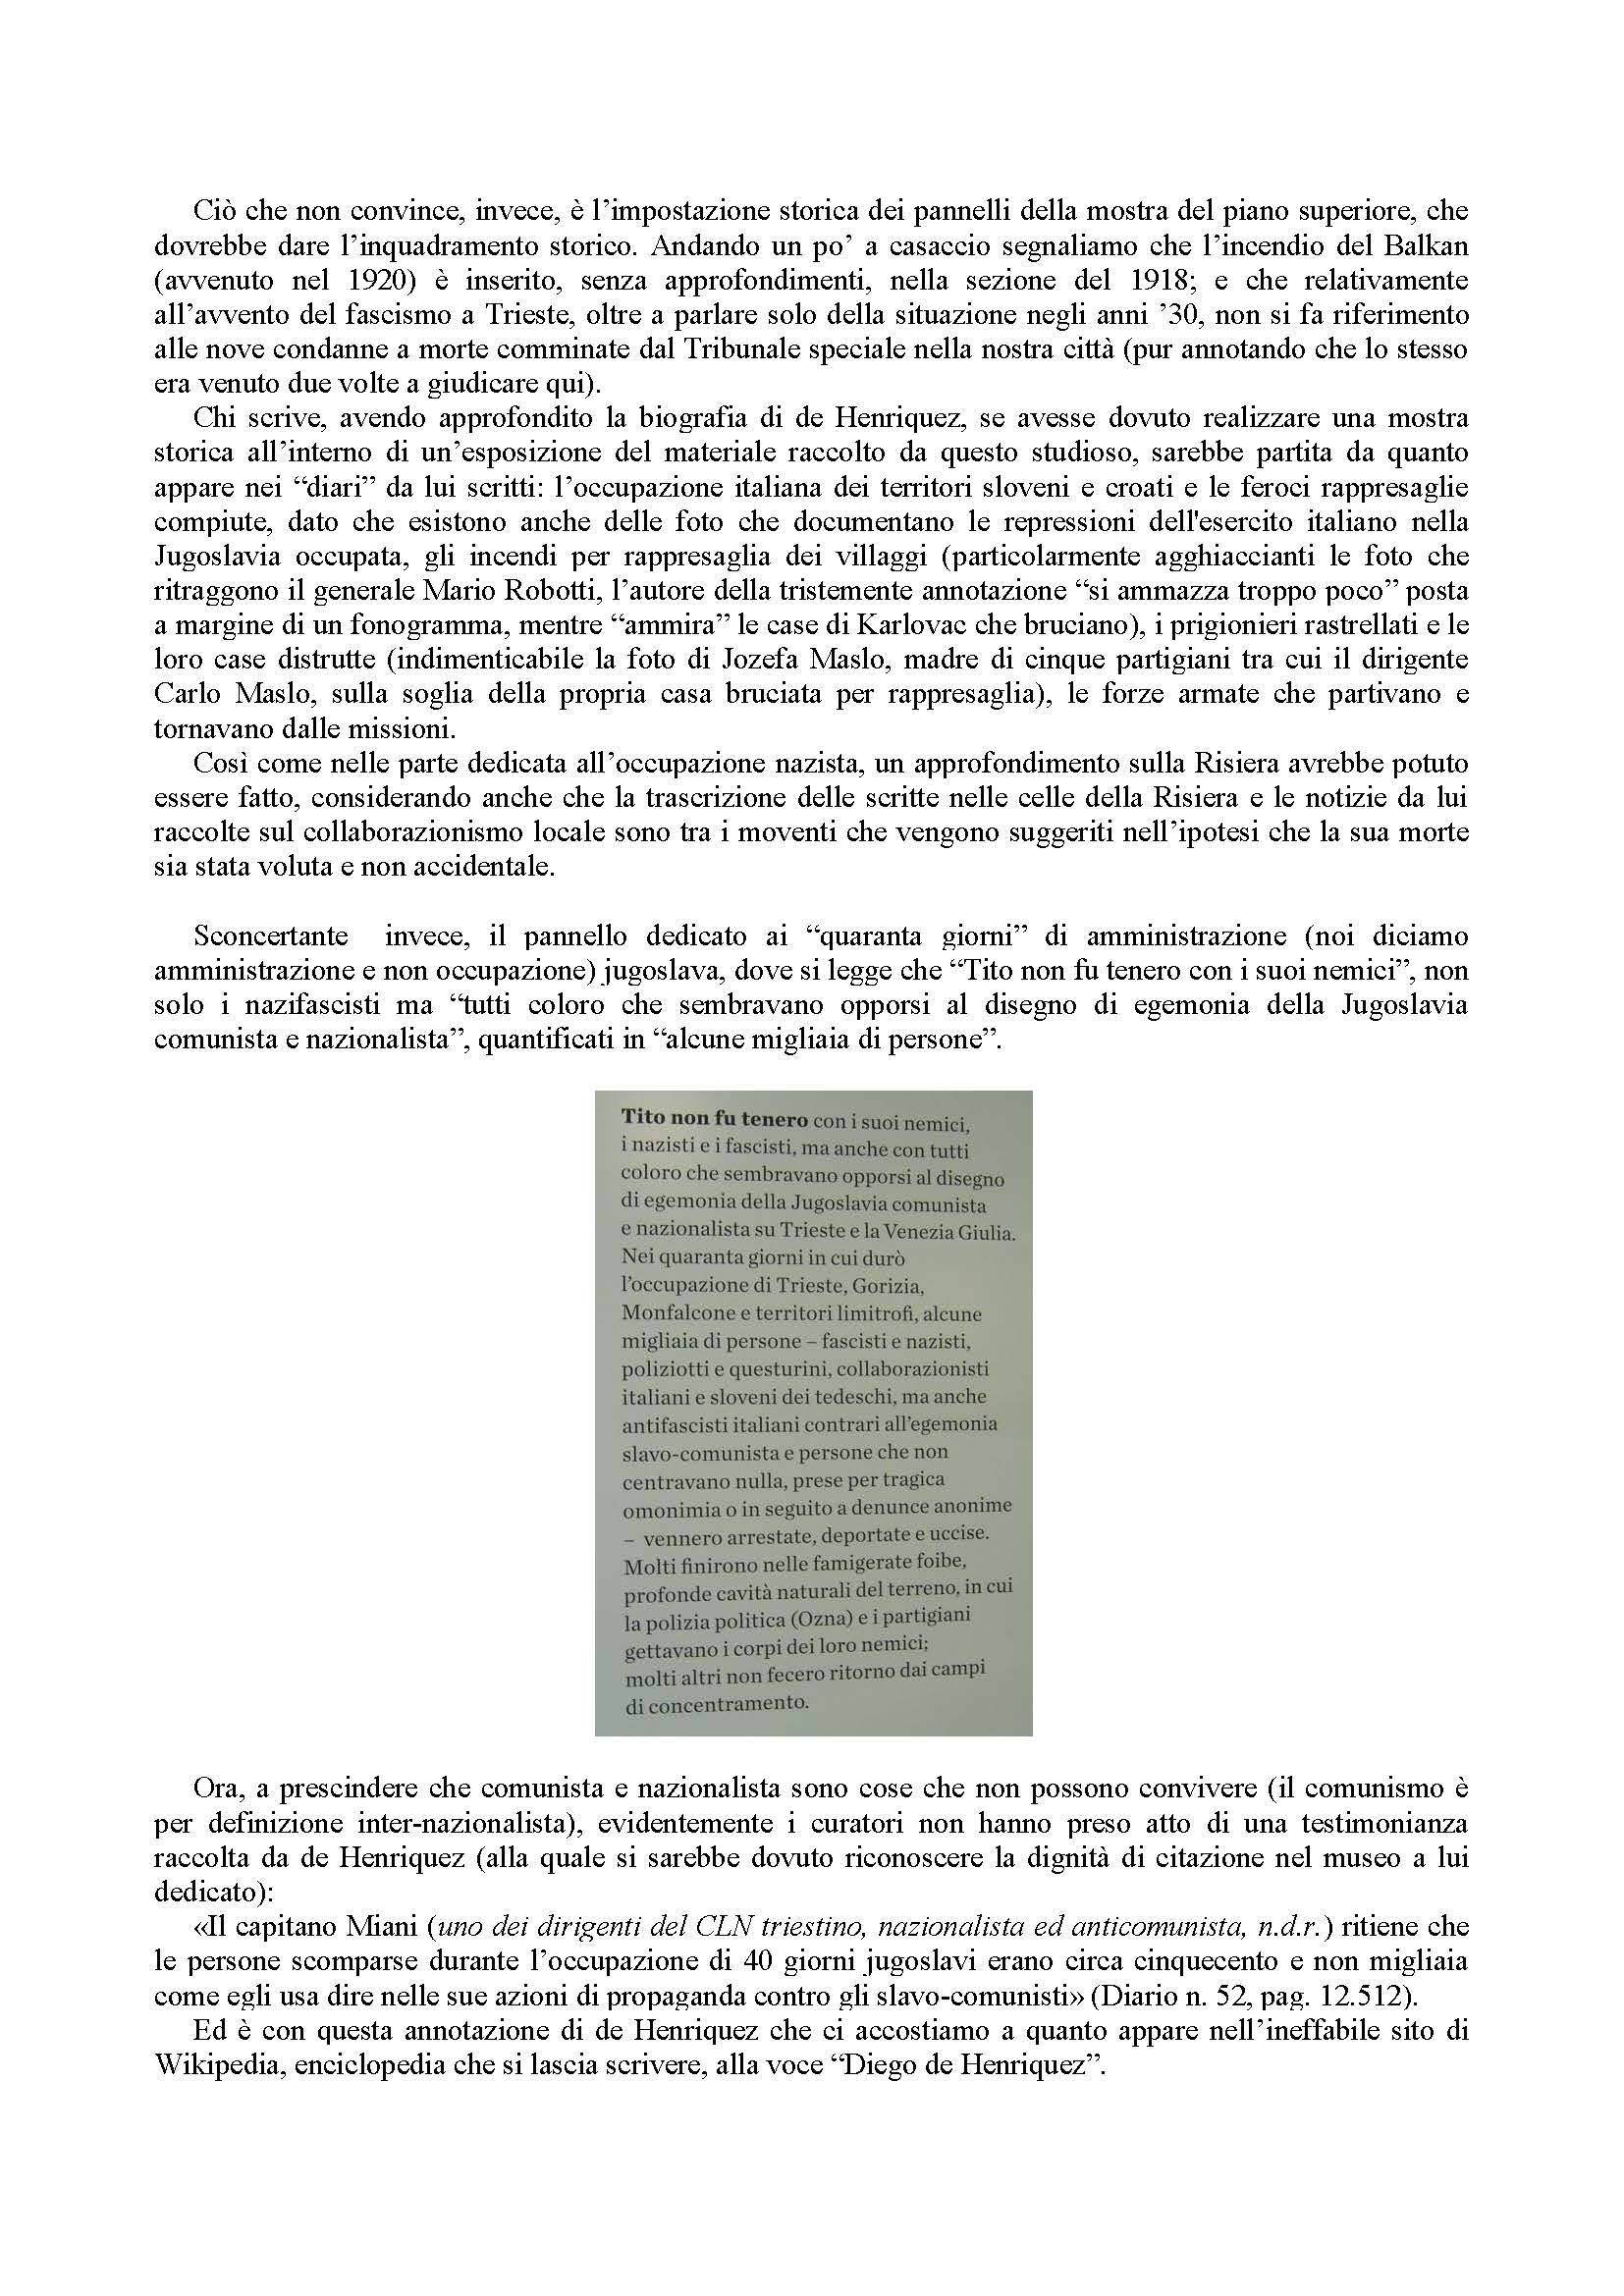 IL-MUSEO-DI-GUERRA-PER-LA-PACE-CON-IL-MATERIALE-DI-DIEGO-DE-HENRIQUEZ1_Page_3